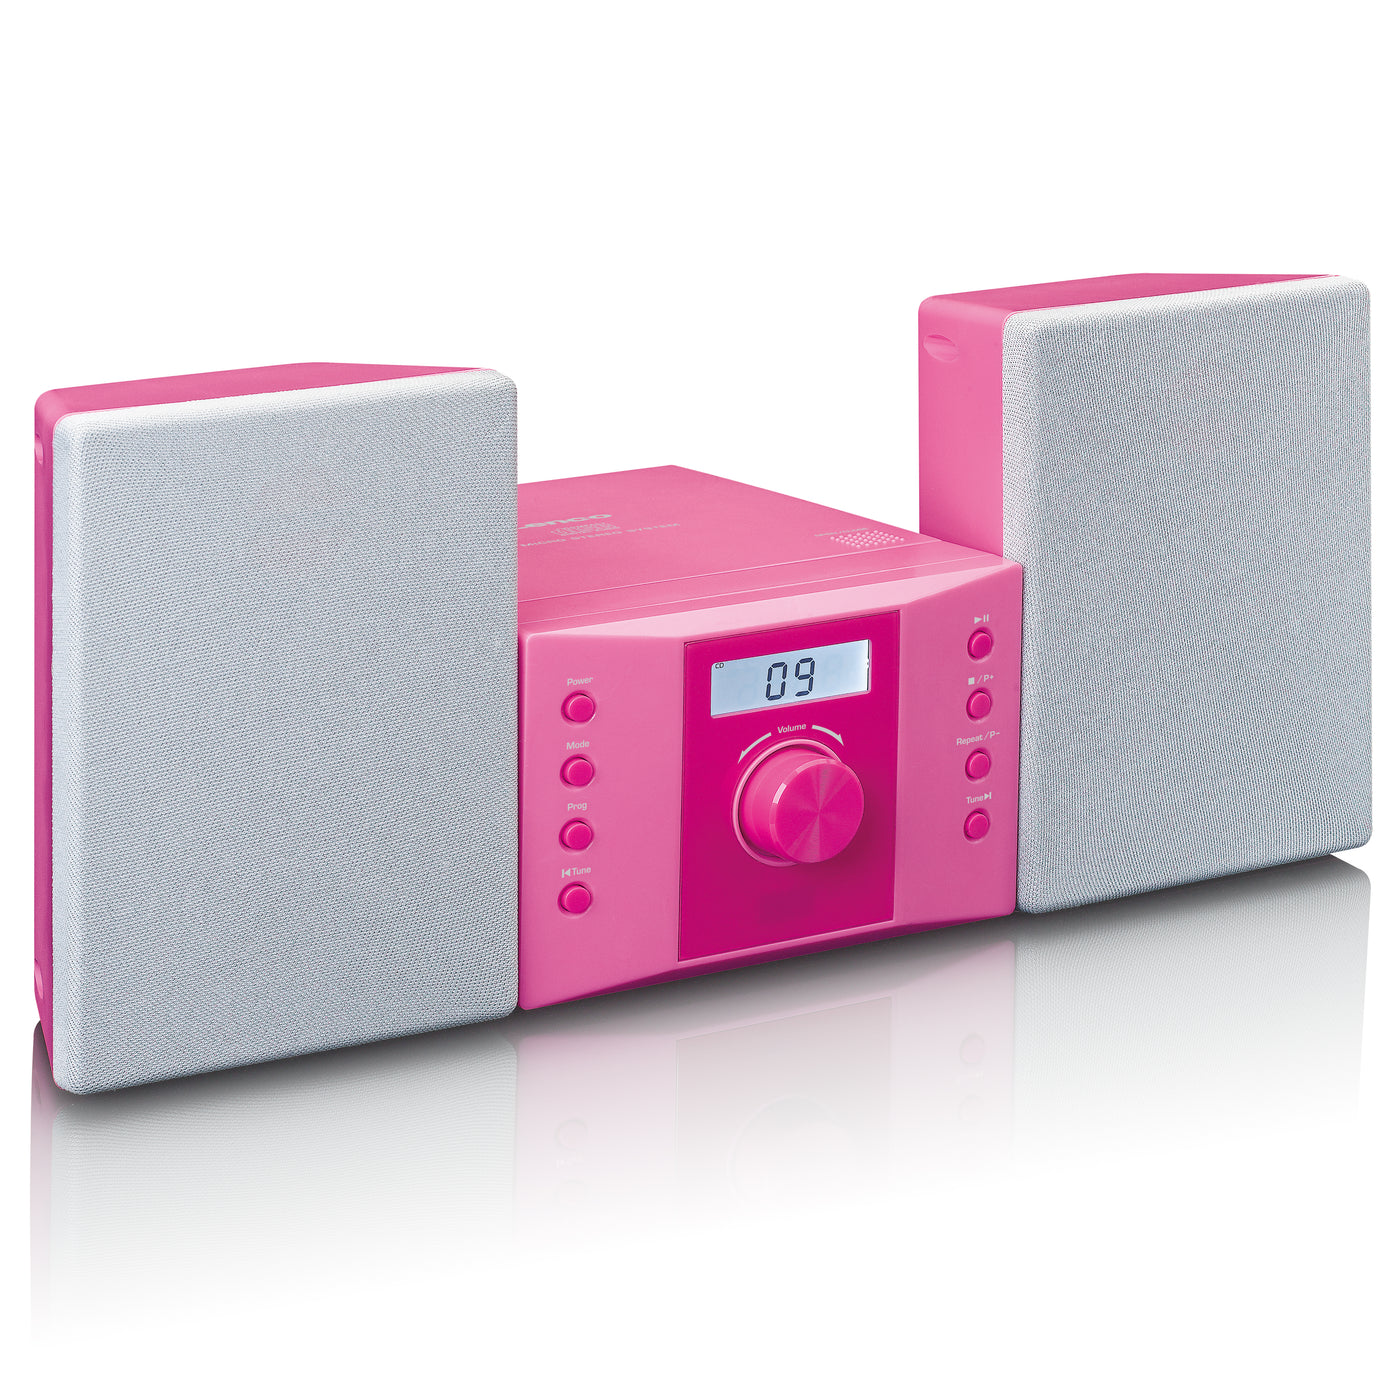 LENCO MC-013PK - Wieża stereo z radiem FM i odtwarzaczem CD - Różowy